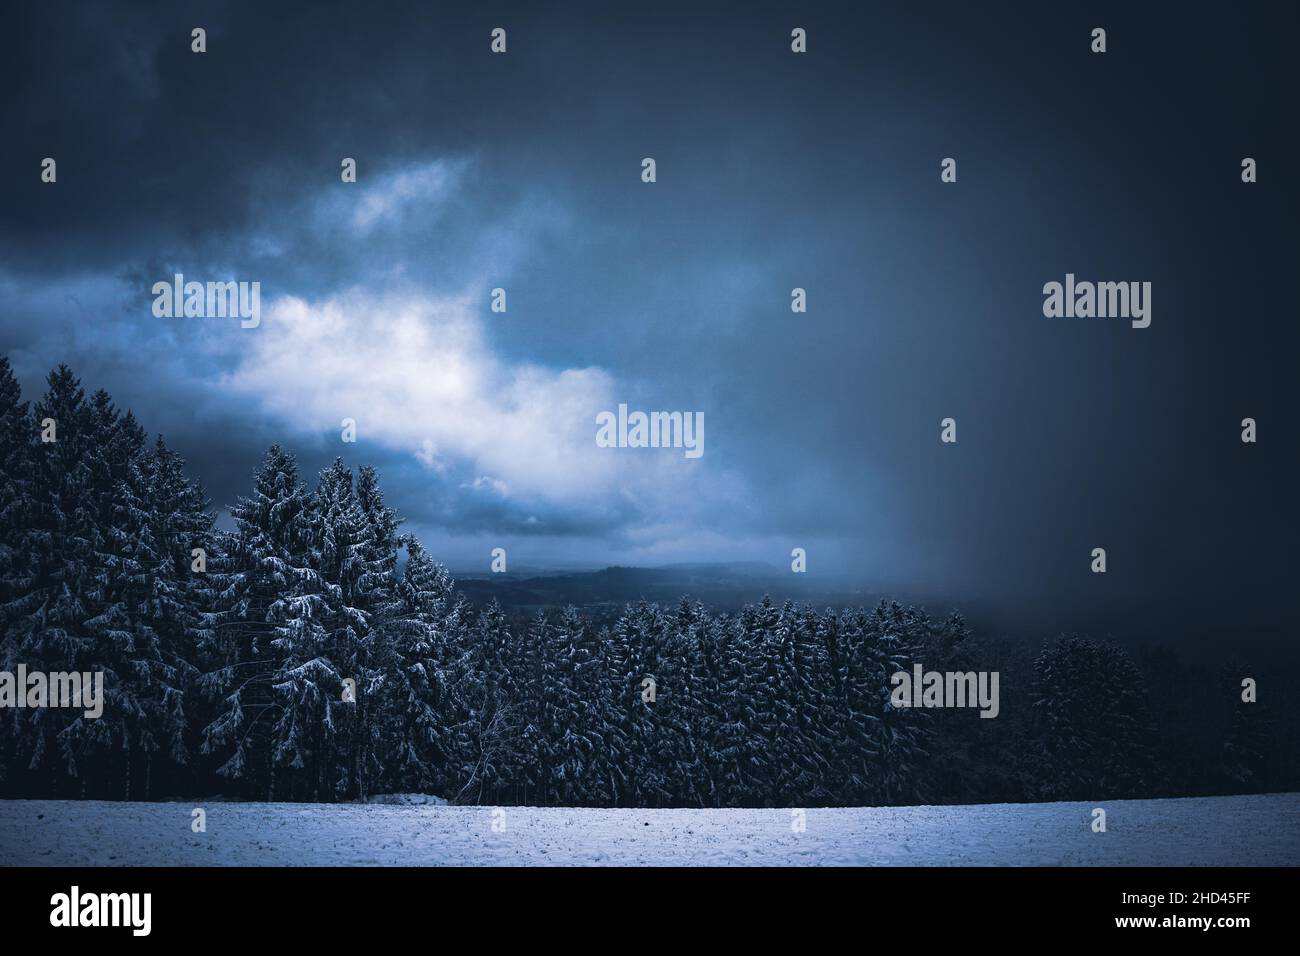 Wald in Bayern im Winter mit blauem Nebel am Abend mit Nebel und Schnee. Stock Photo